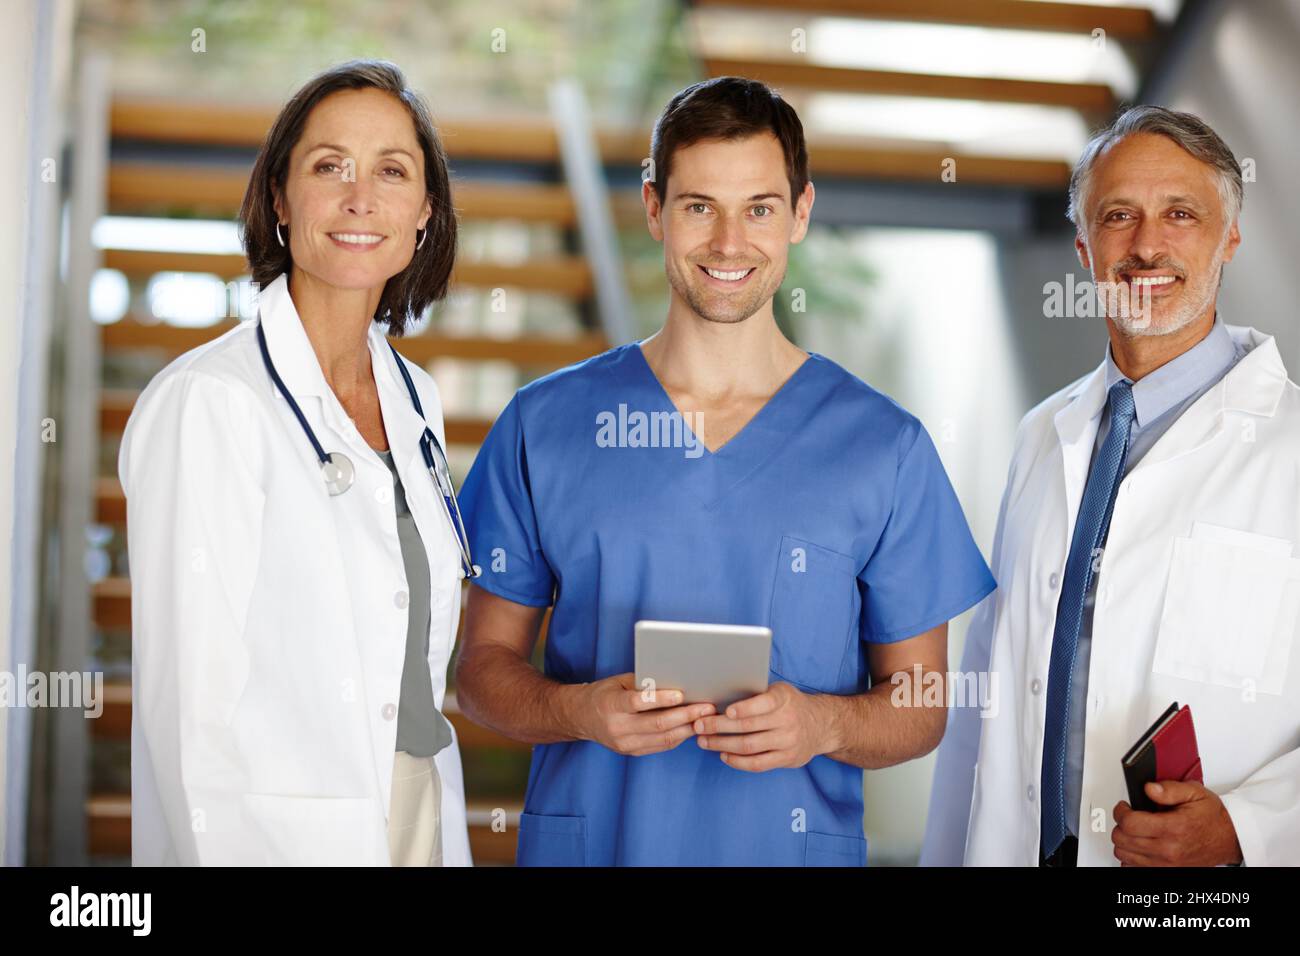 Estaban aquí para ayudar. Un retrato recortado de un guapo joven médico de pie con una tableta entre dos de sus colegas. Foto de stock